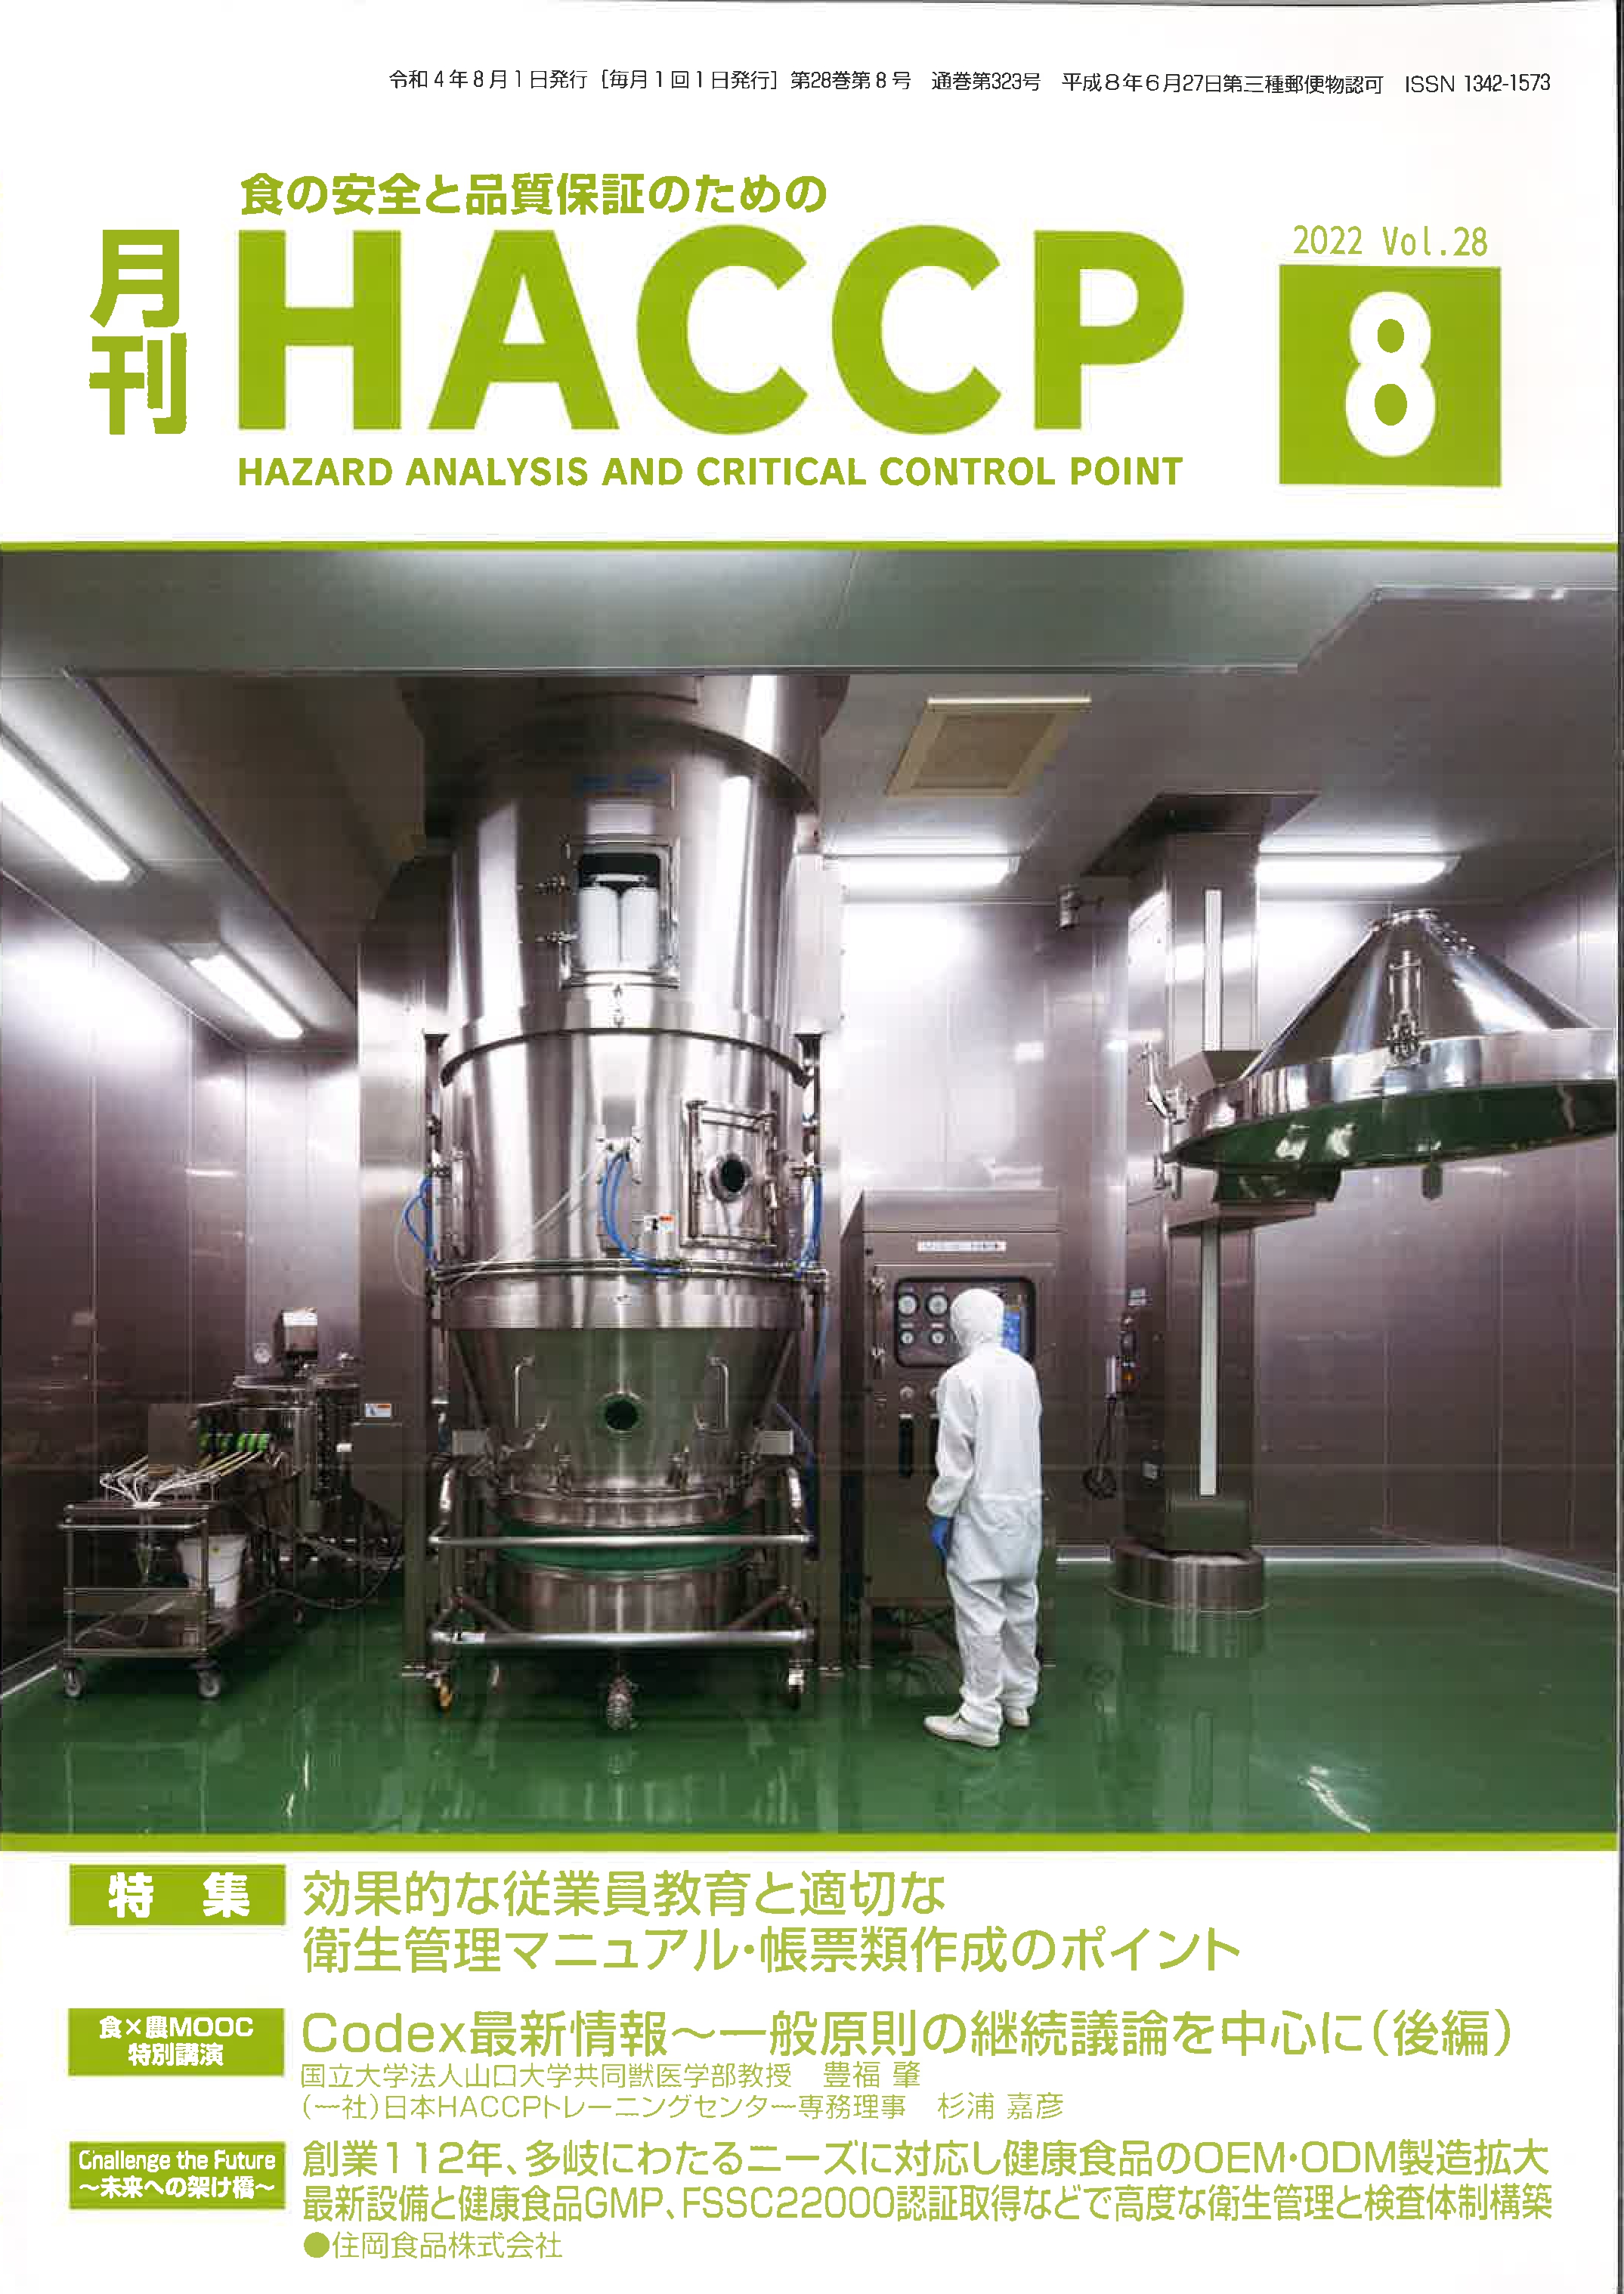 月刊HACCPへ当社の品質管理体制について掲載されました